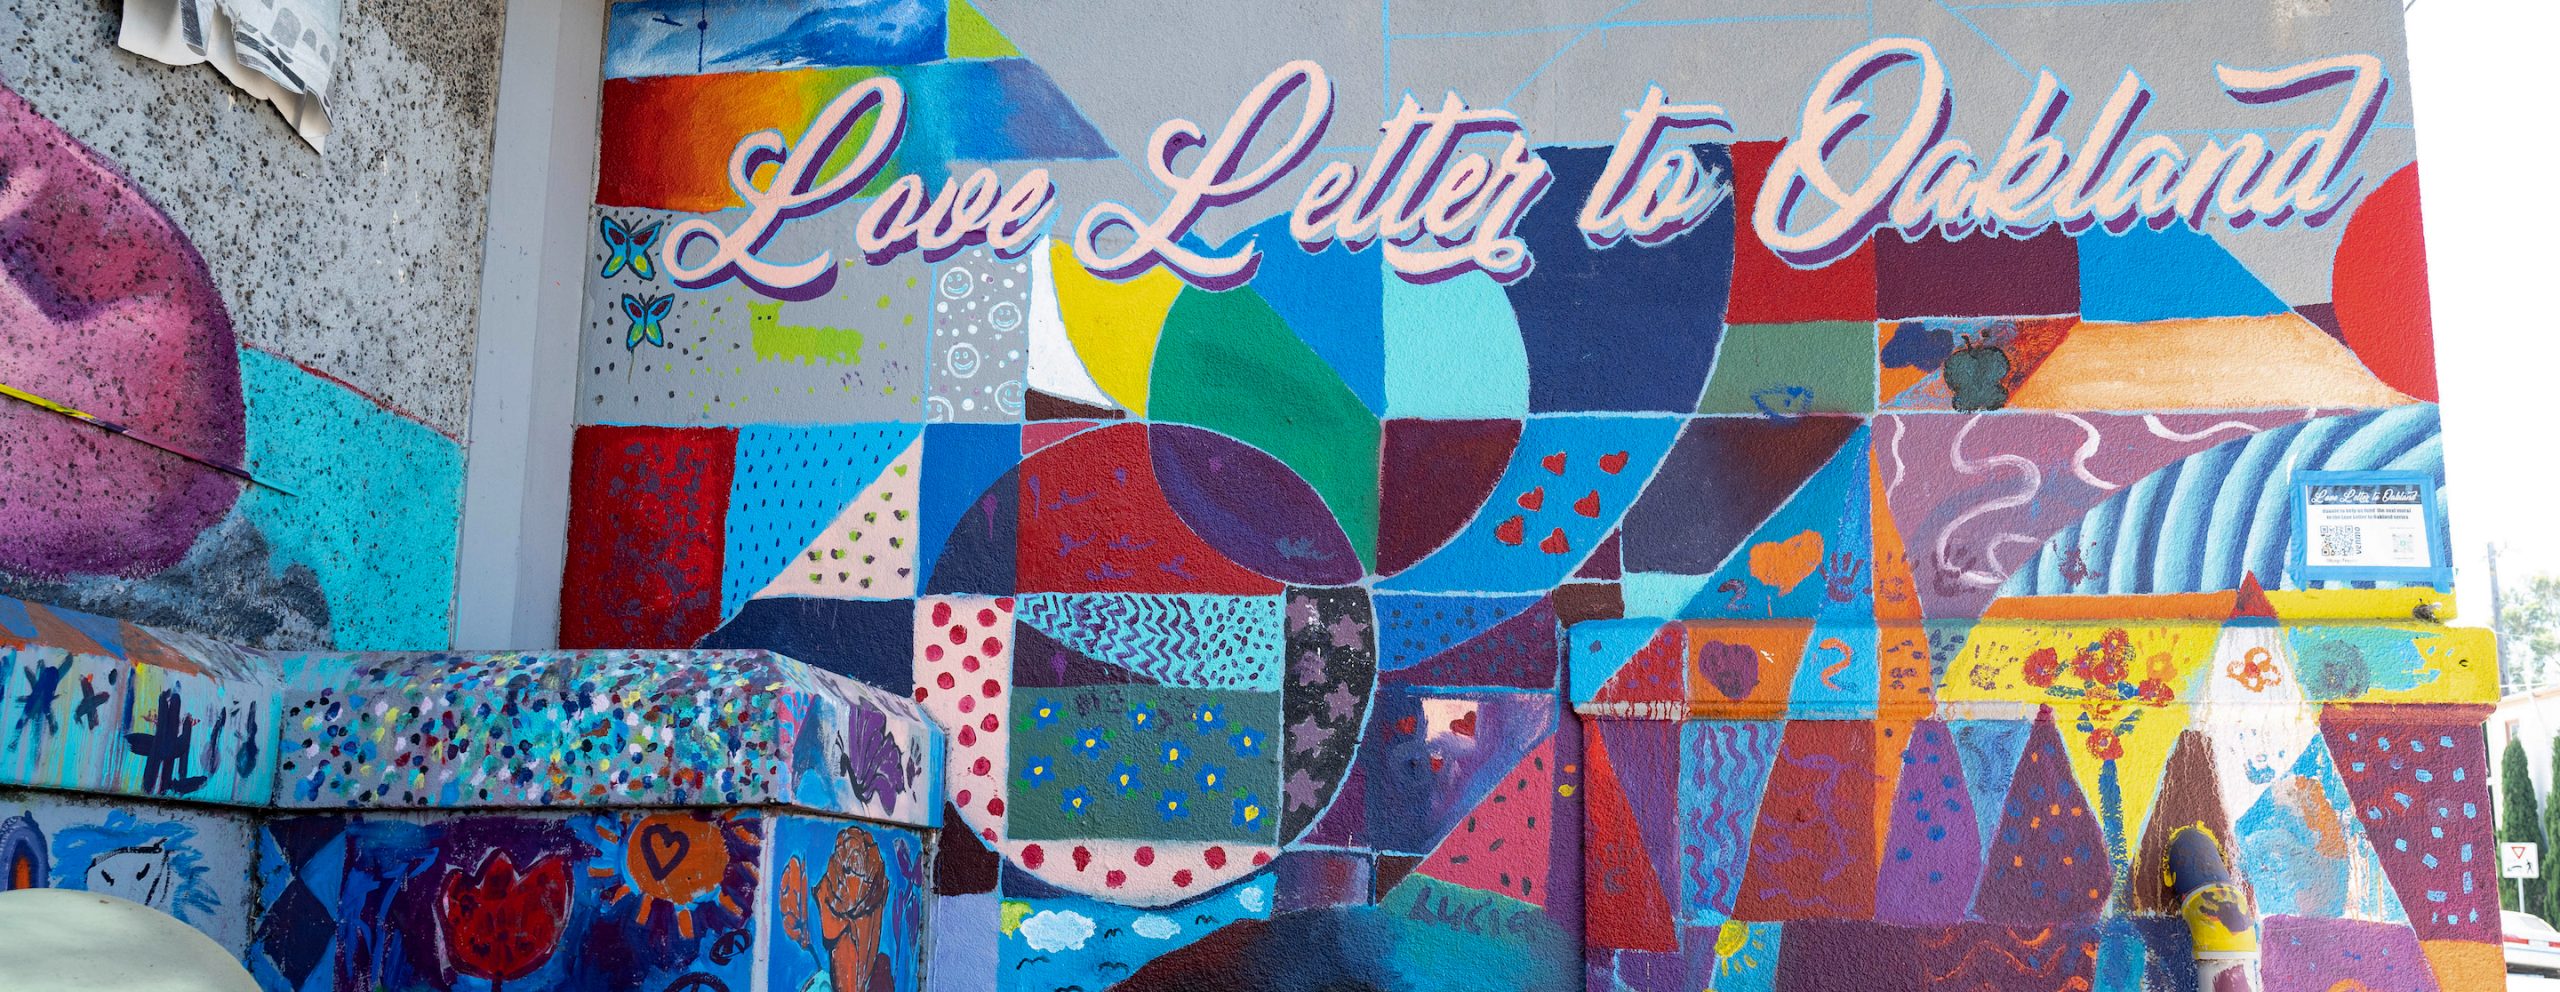 mural que dice "Una carta de amor a Oakland"